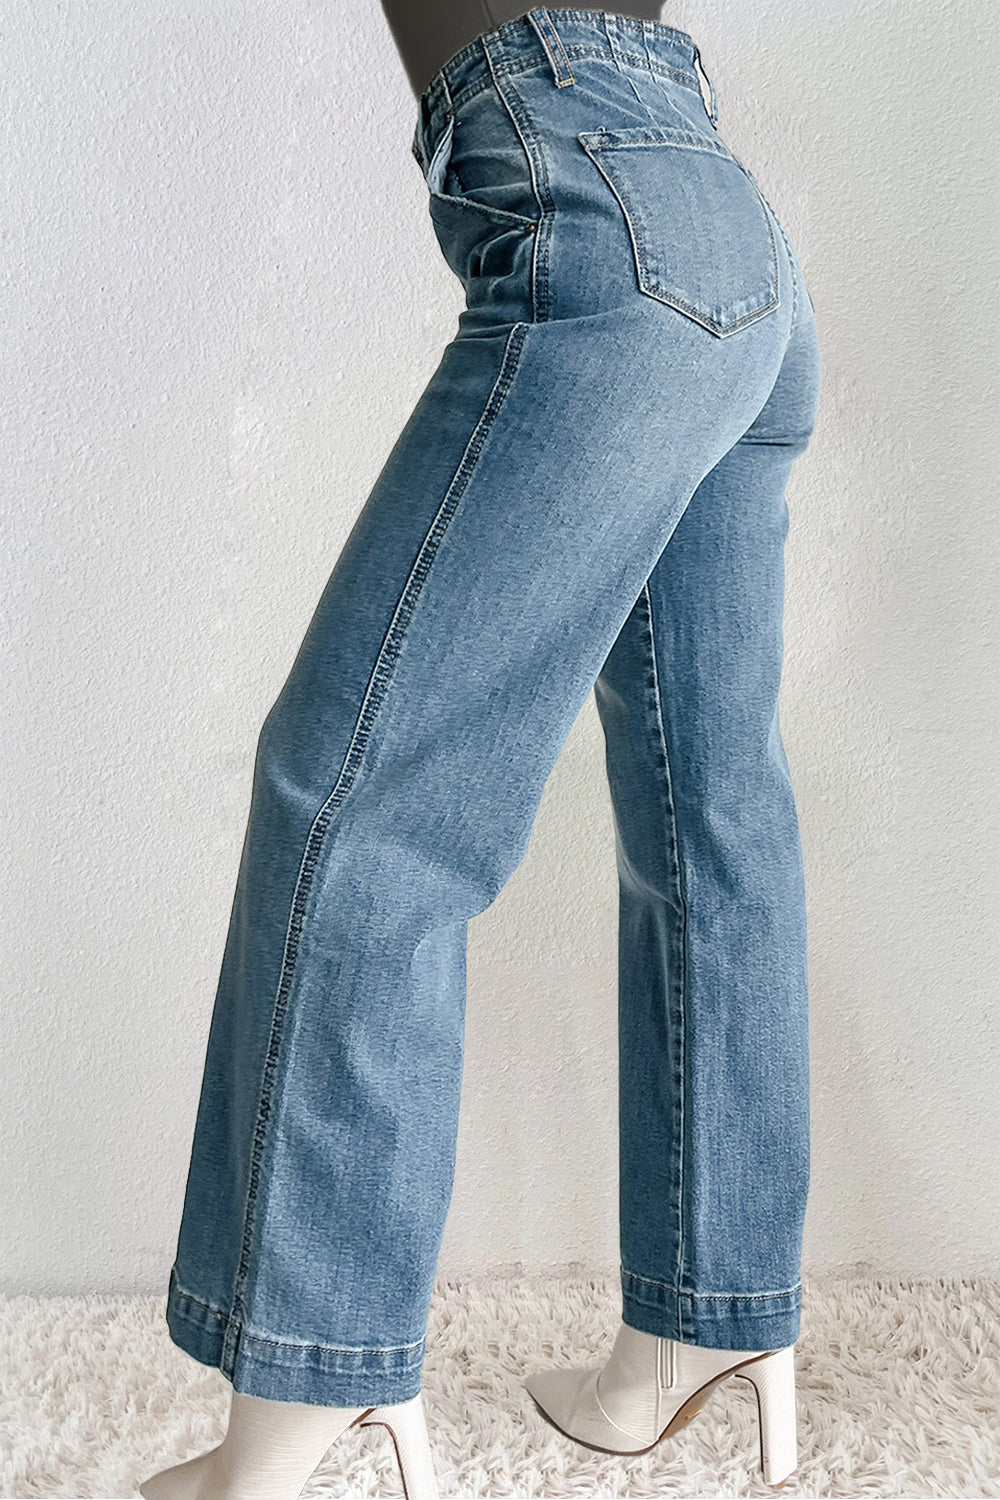 TEEK - Straight Medium Wash Pocketed Jeans JEANS TEEK Trend   